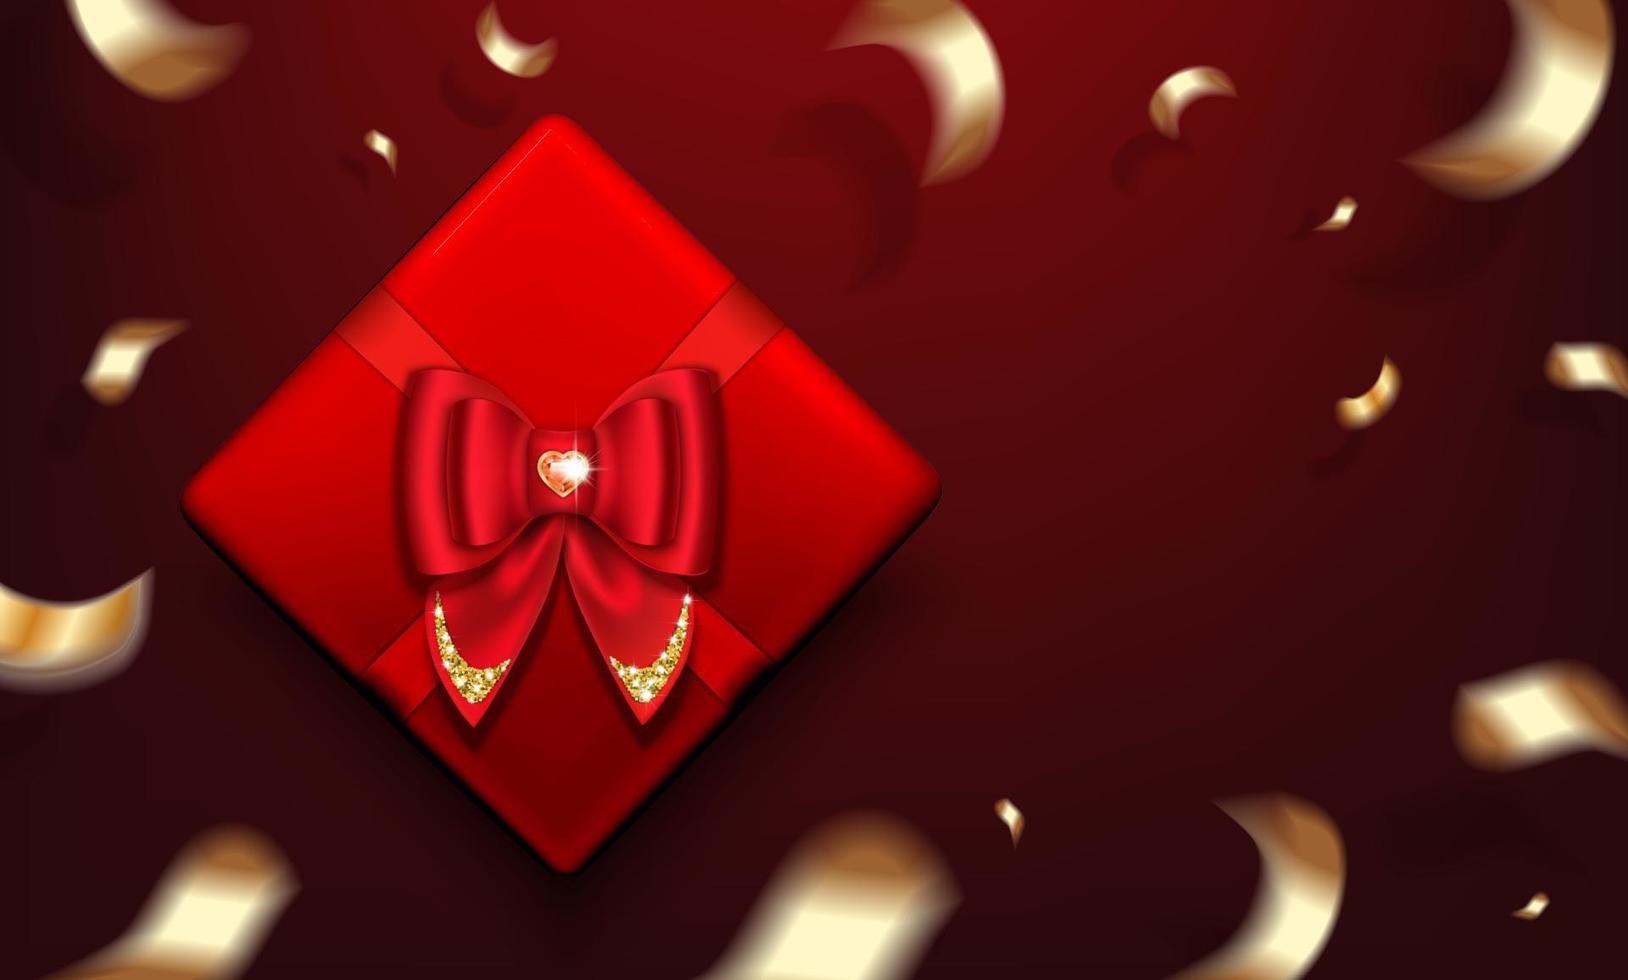 caja de regalo roja con un lazo y una piedra preciosa en forma de corazón de rubí. serpentina dorada. cartel para el día de san valentín, navidad. ilustración vectorial realista. vector